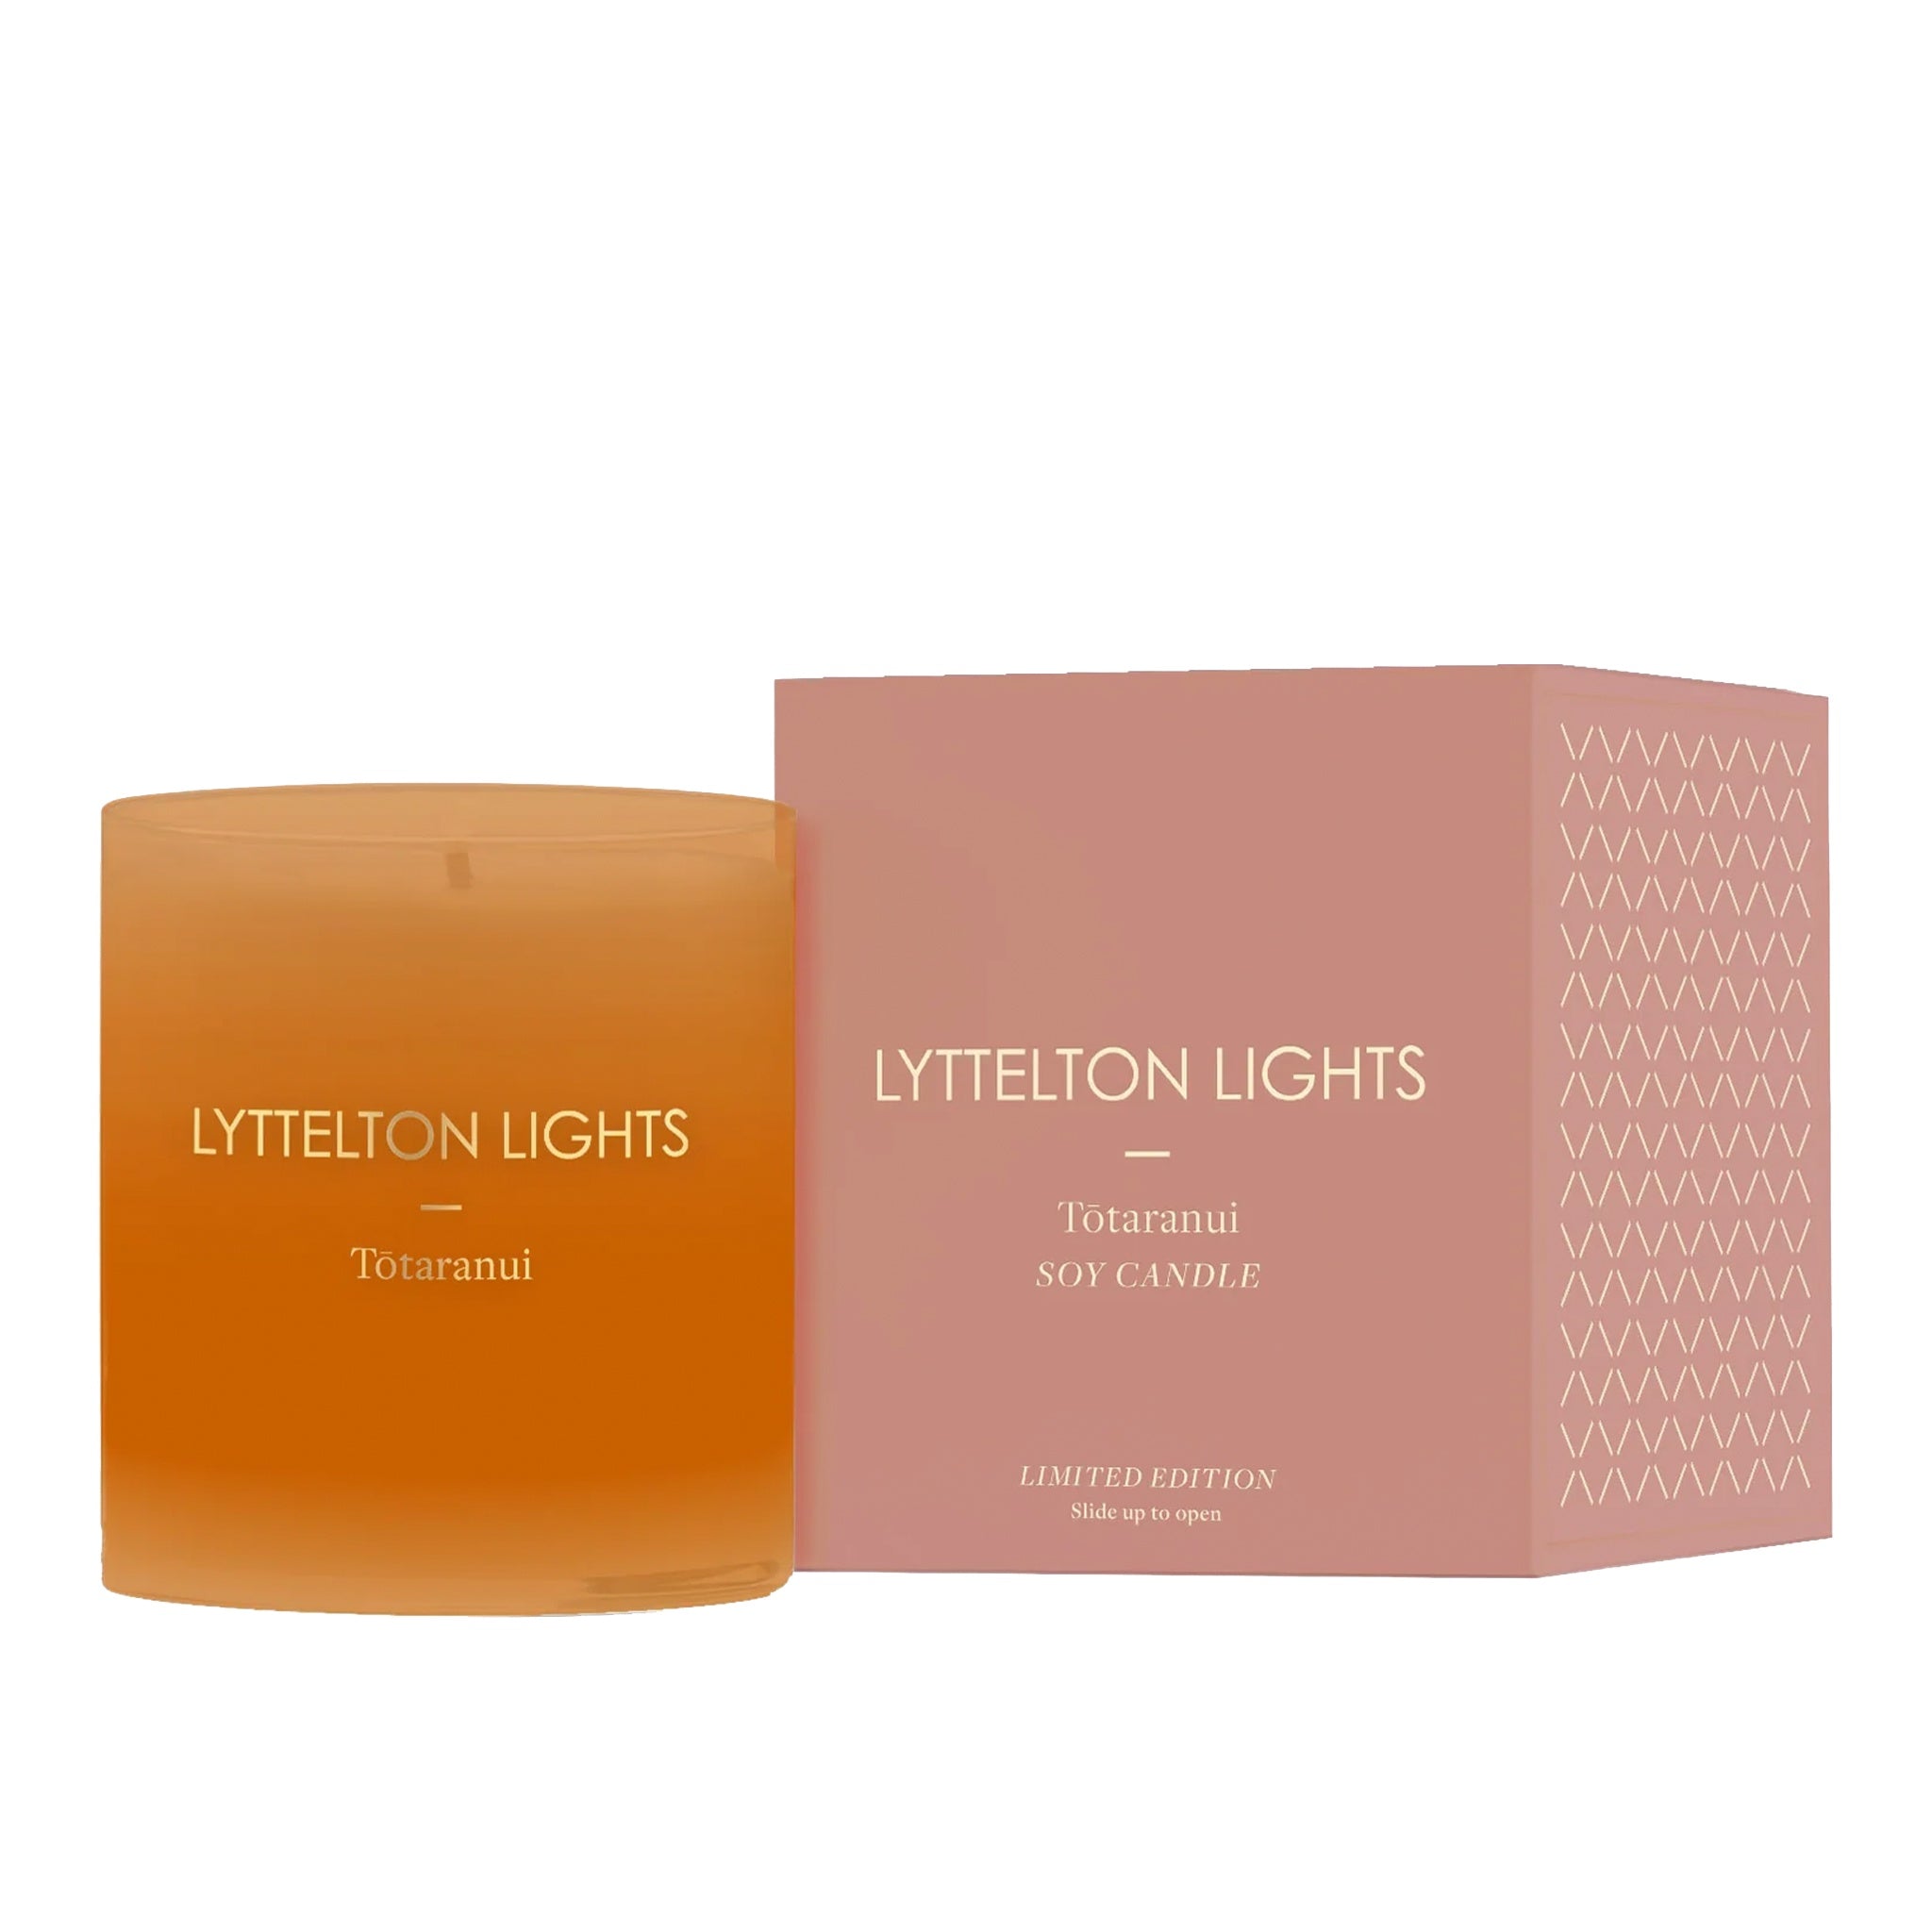 Lyttelton Lights Limited Edition Candle Medium - Tōtaranui